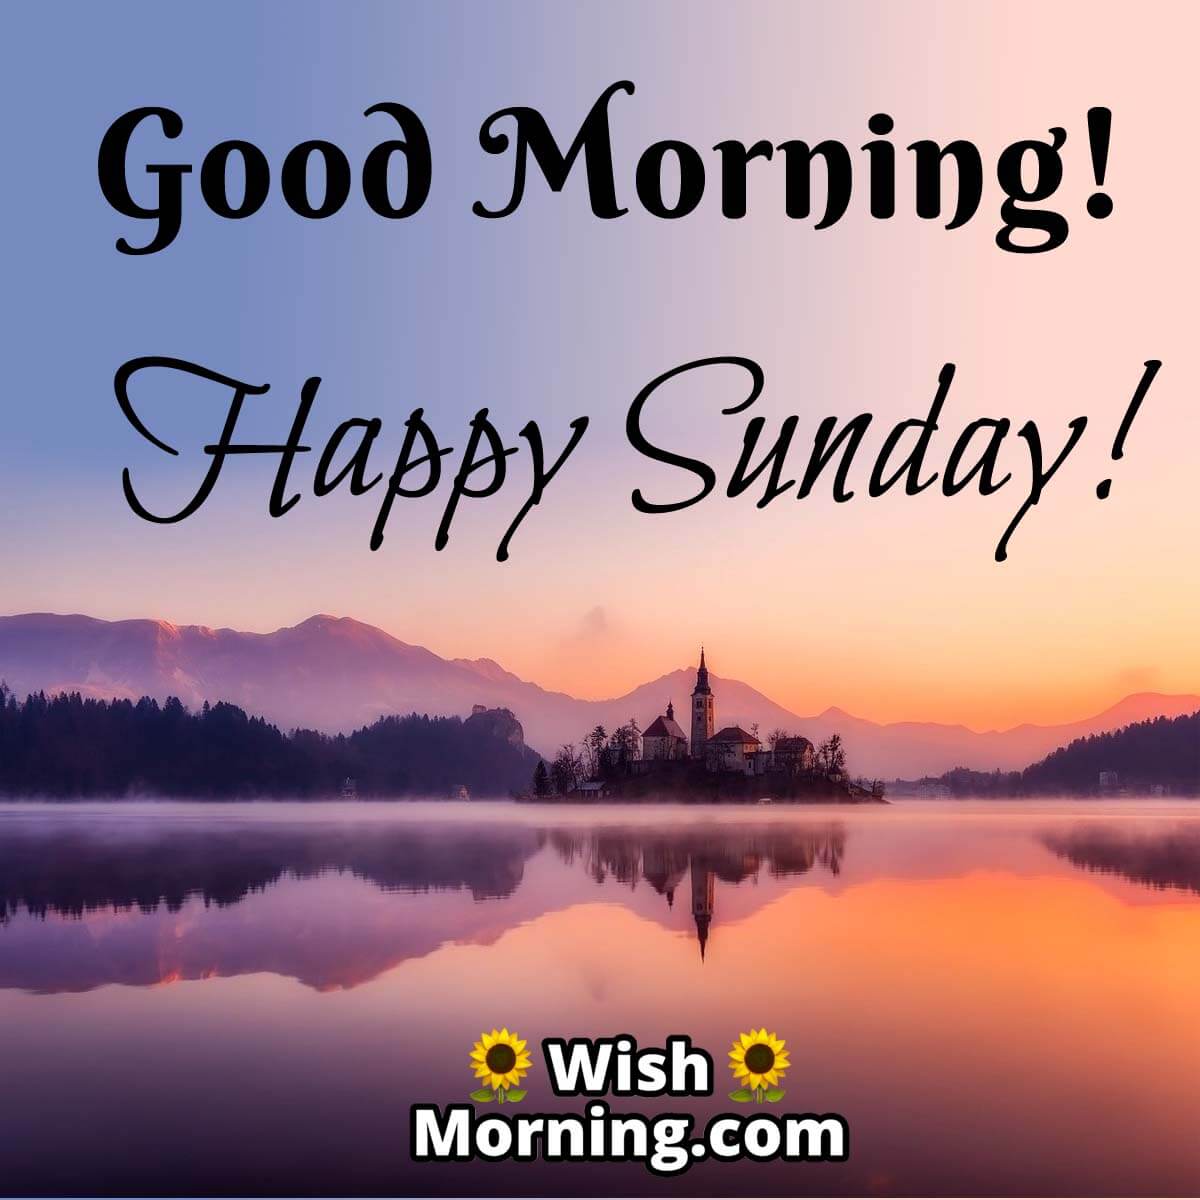 Sunday Morning Wishes - Wish Morning